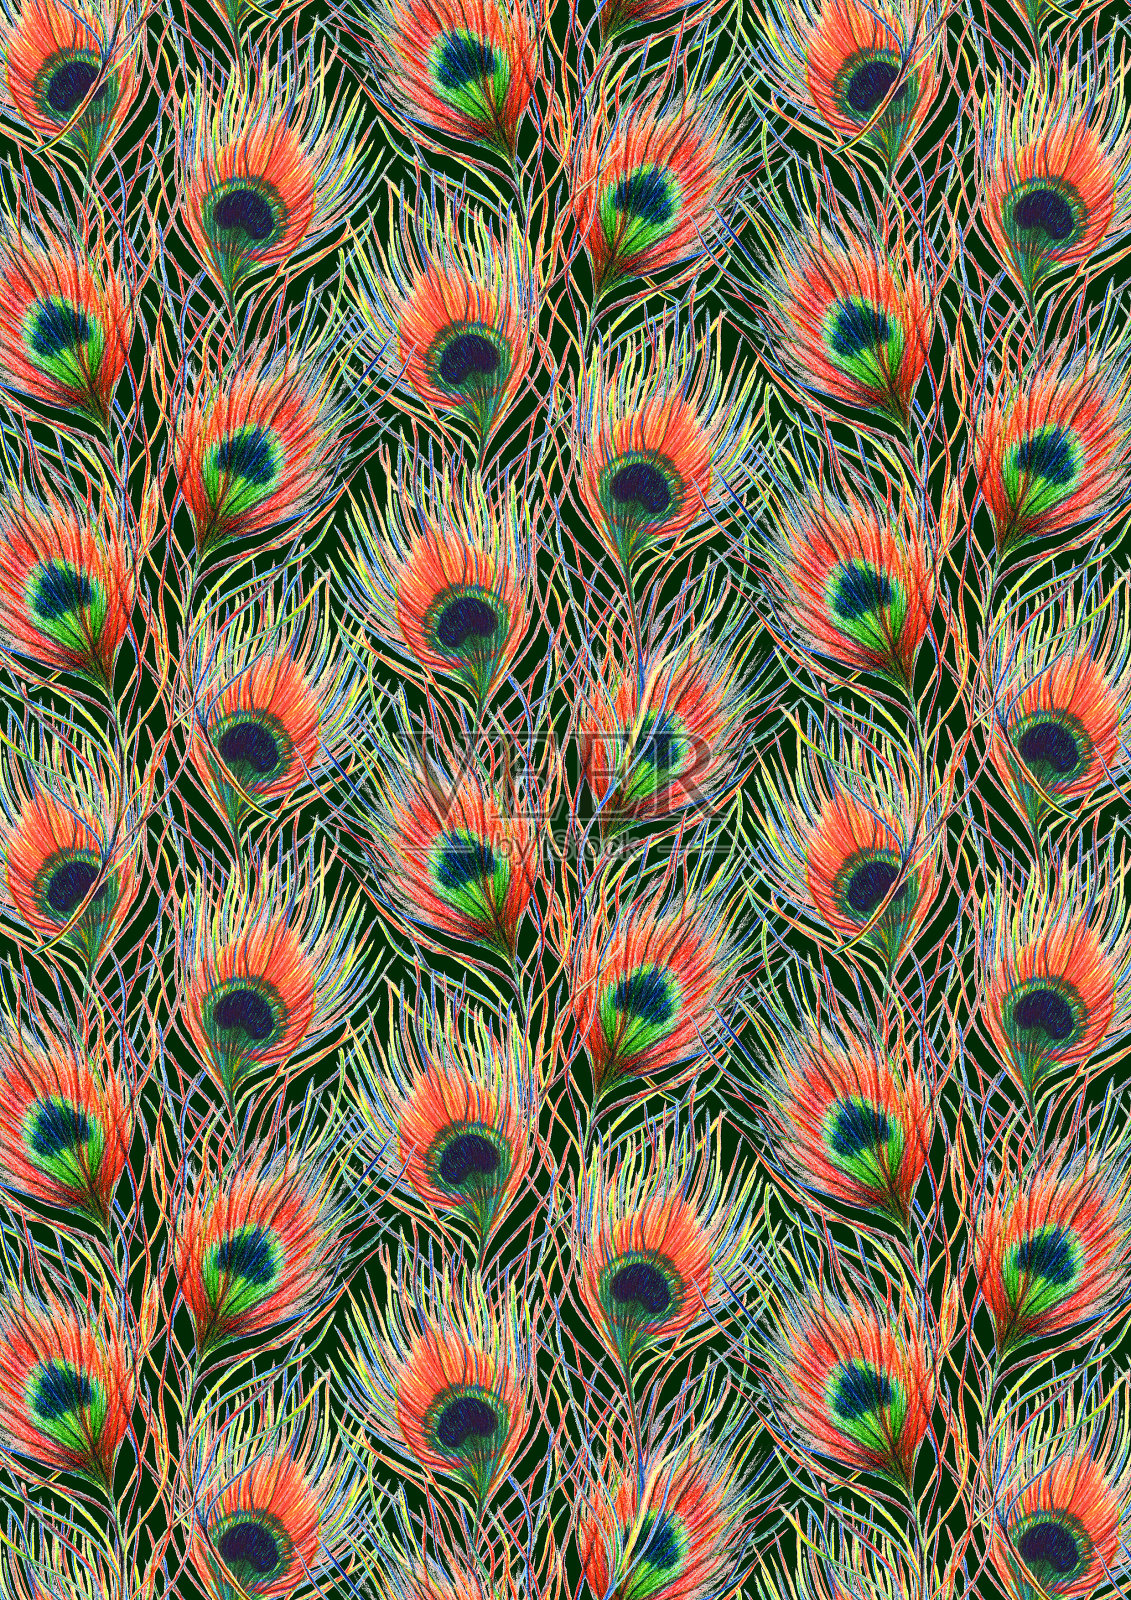 彩虹色彩丰富的孔雀鸟羽毛背景图案纹理插画图片素材